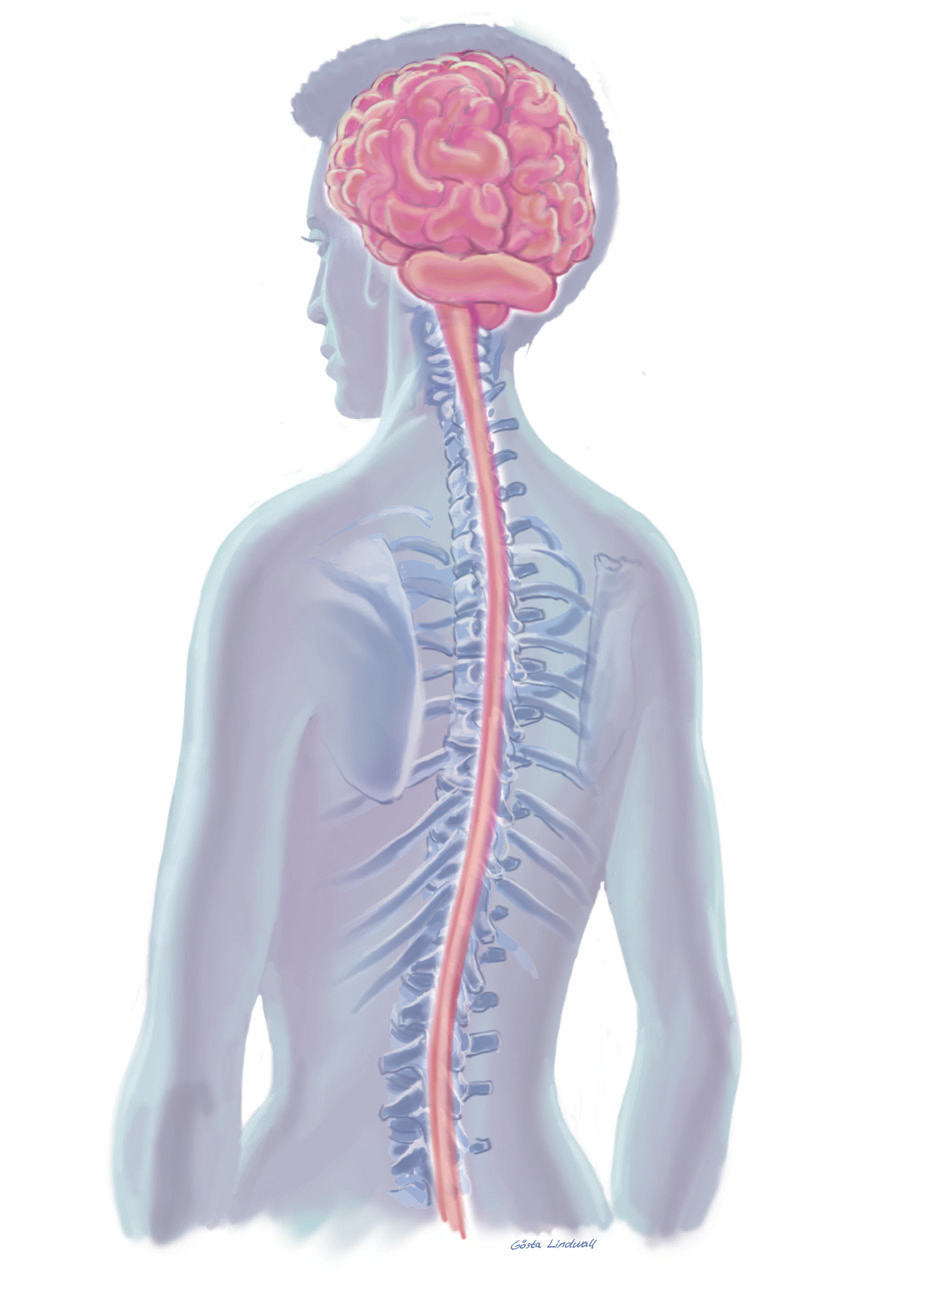 En la EM, se producen pequeñas inflamaciones en el cerebro o la médula espinal. Esto daña a la mielina, provocando que se descomponga.